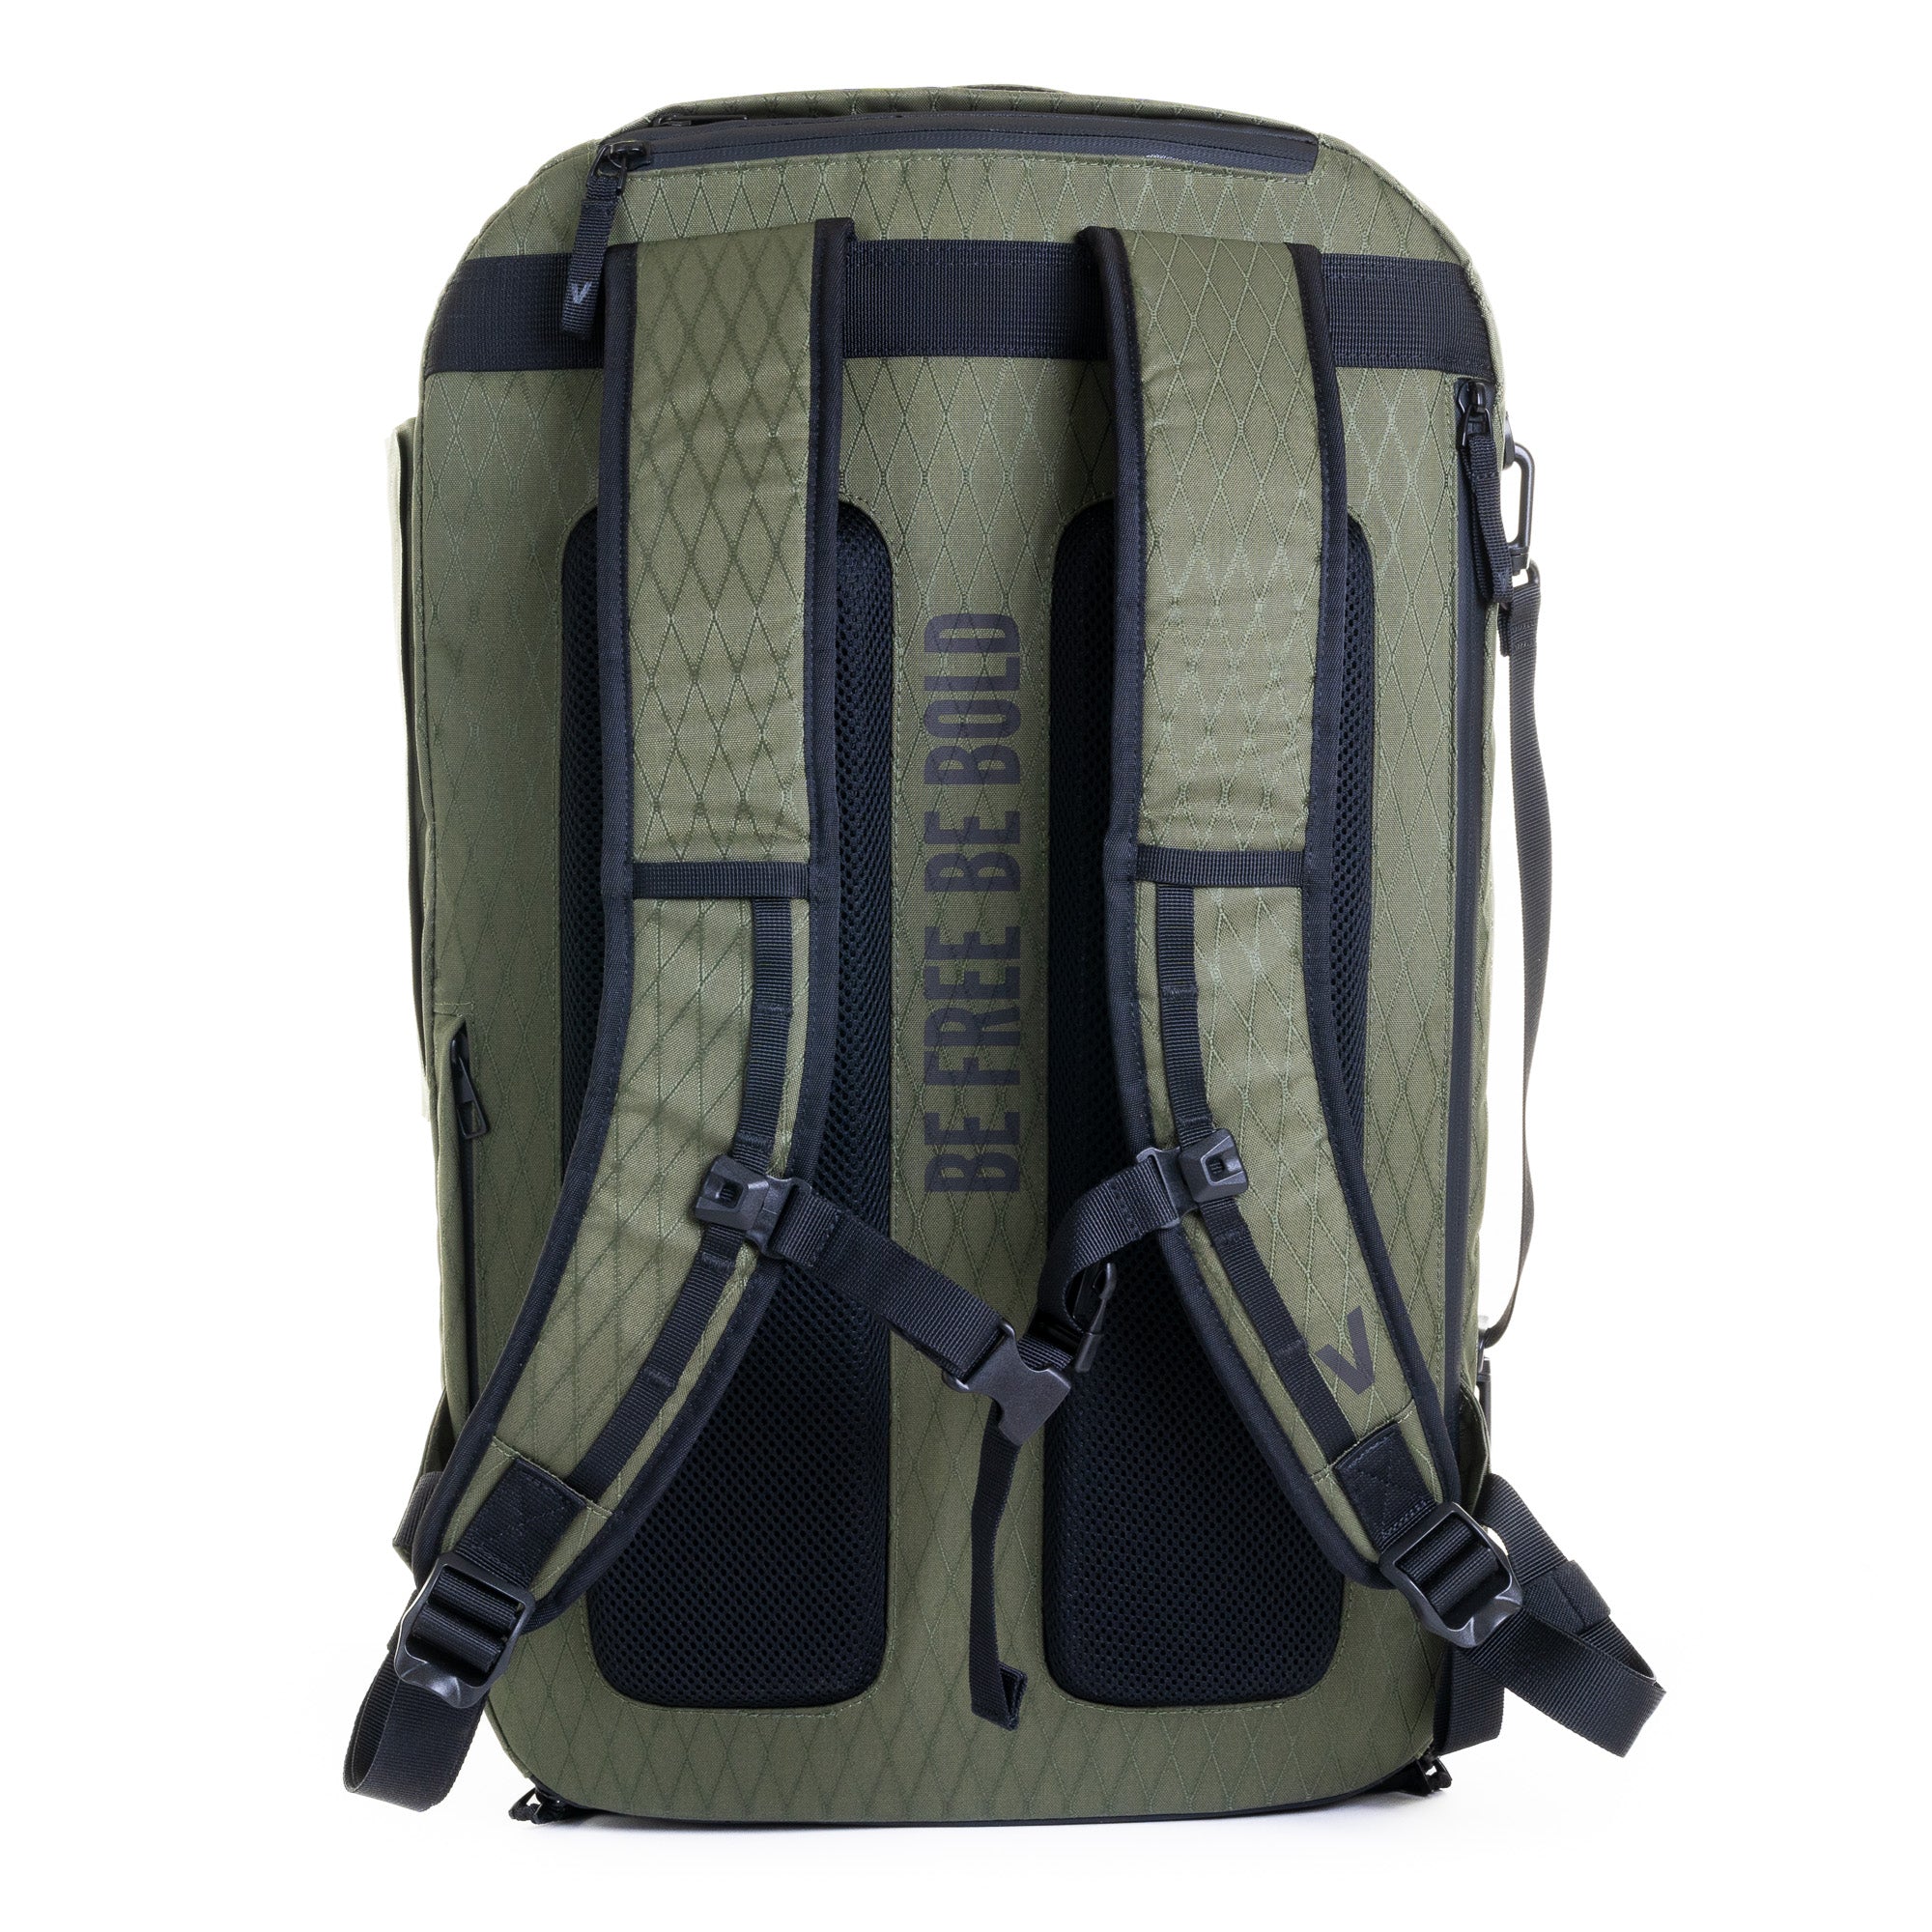 Pack Storm Duradiamond Olive backpack + Travel Compressor + Toiletry bag + Internal divider